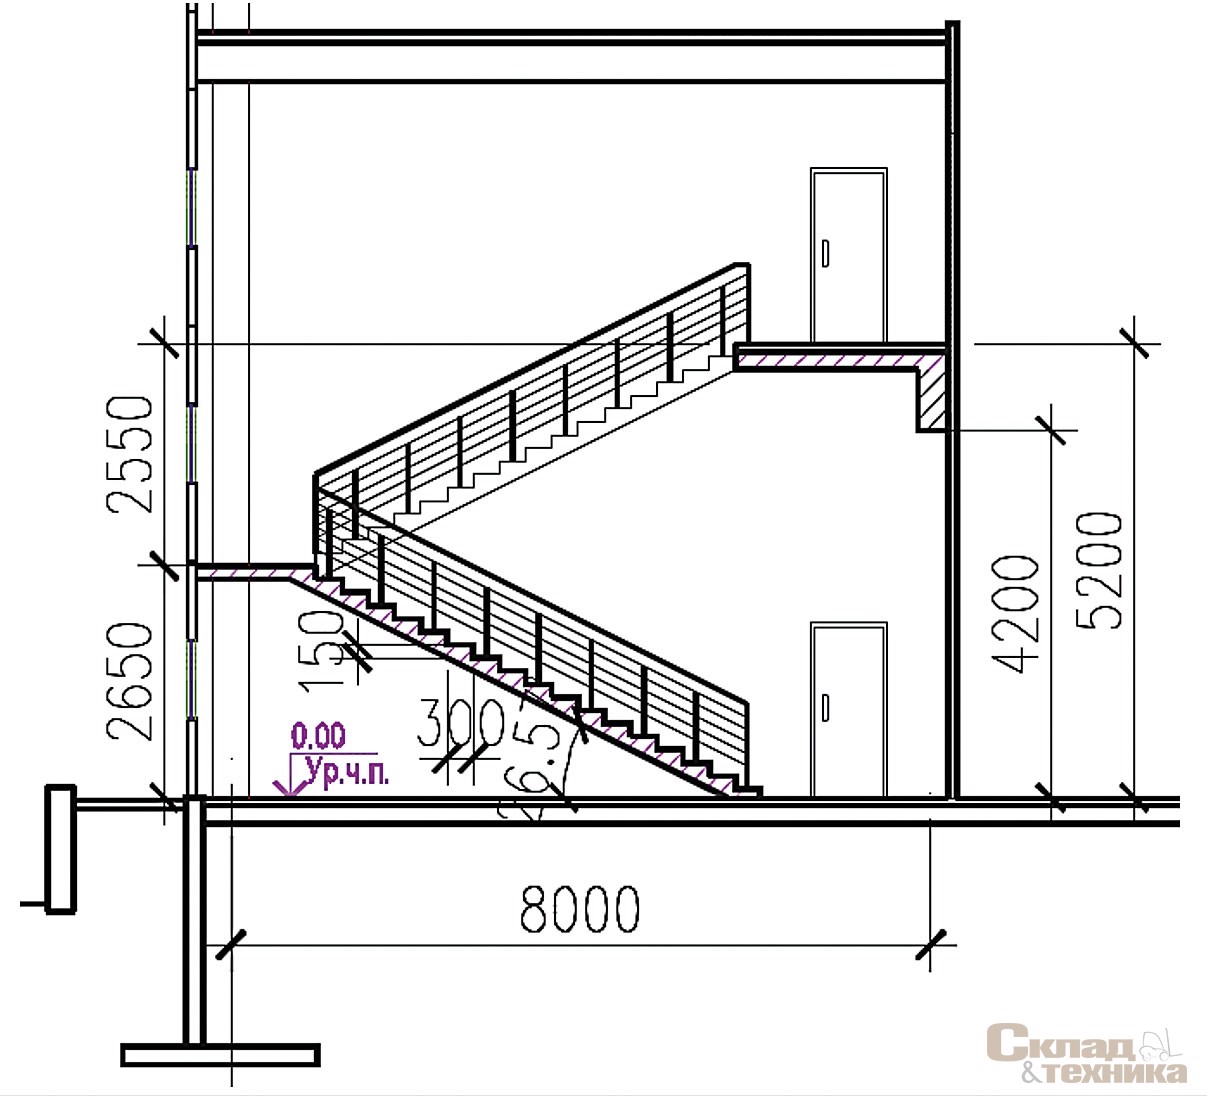 [b]Рис. 9.[/b] Параметры двухмаршевой лестницы высотой 4200 мм